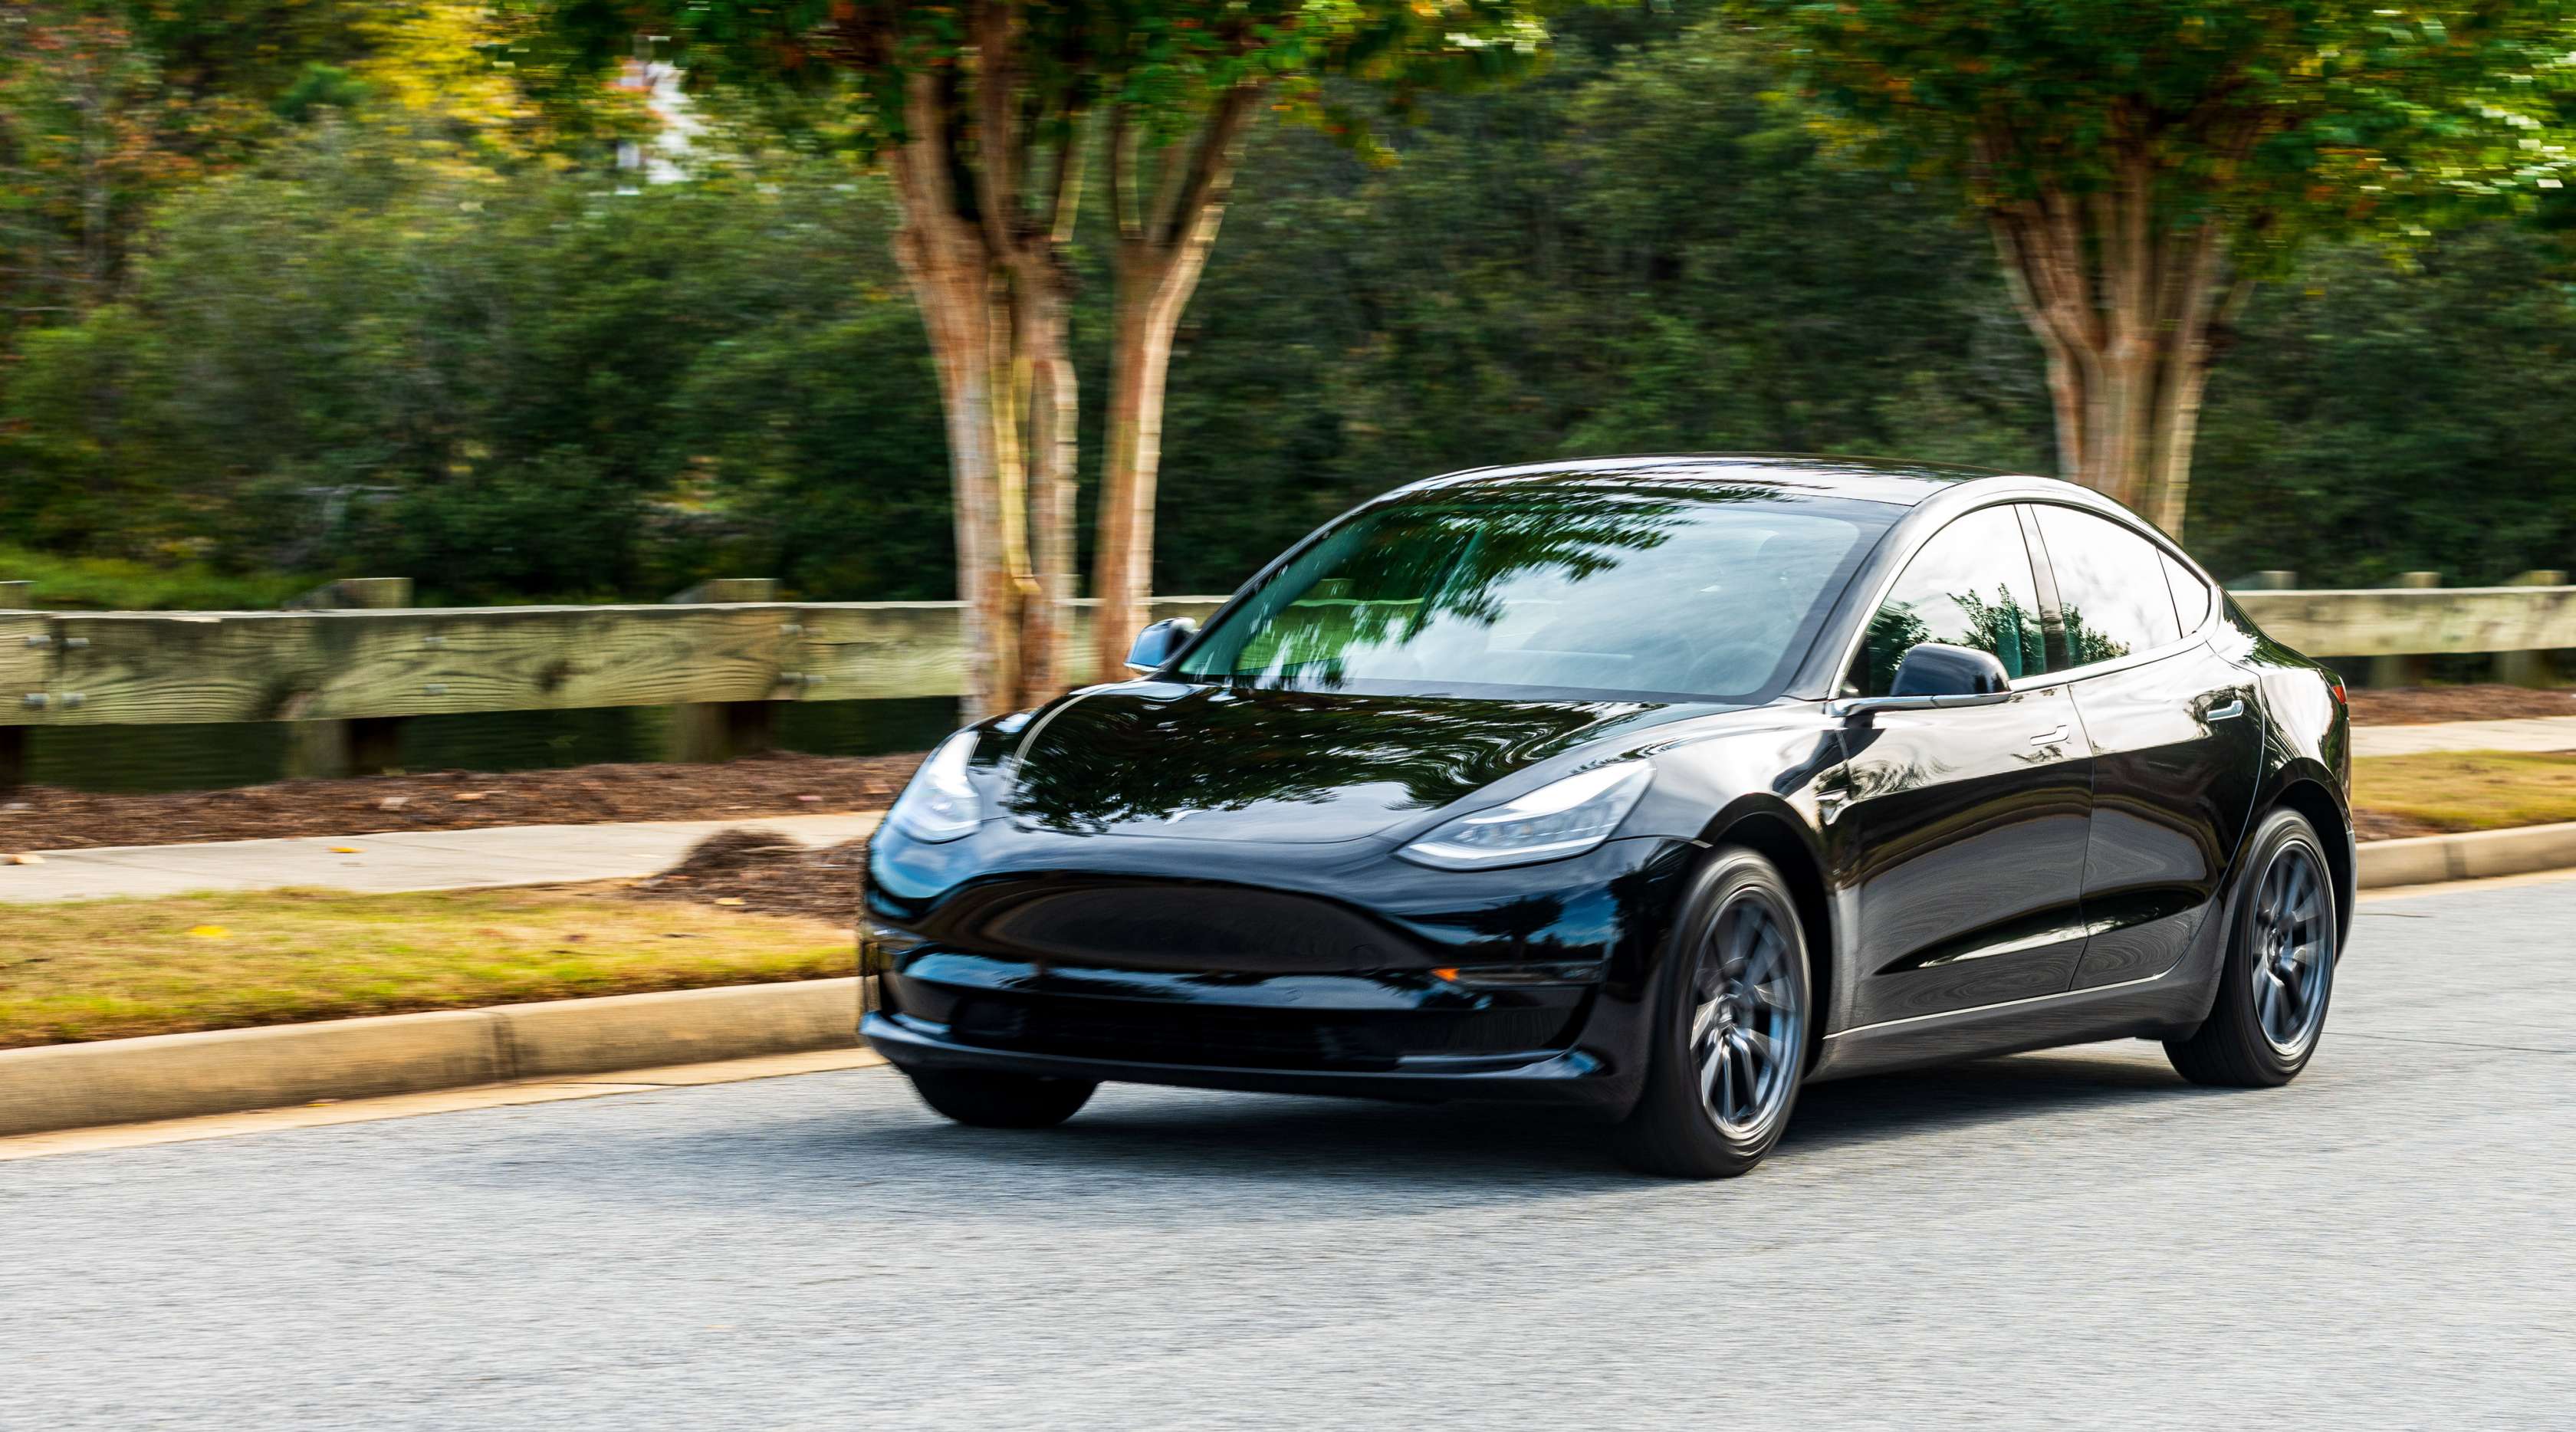 Schwarzer Tesla fährt auf einer Straße, Frontalansicht